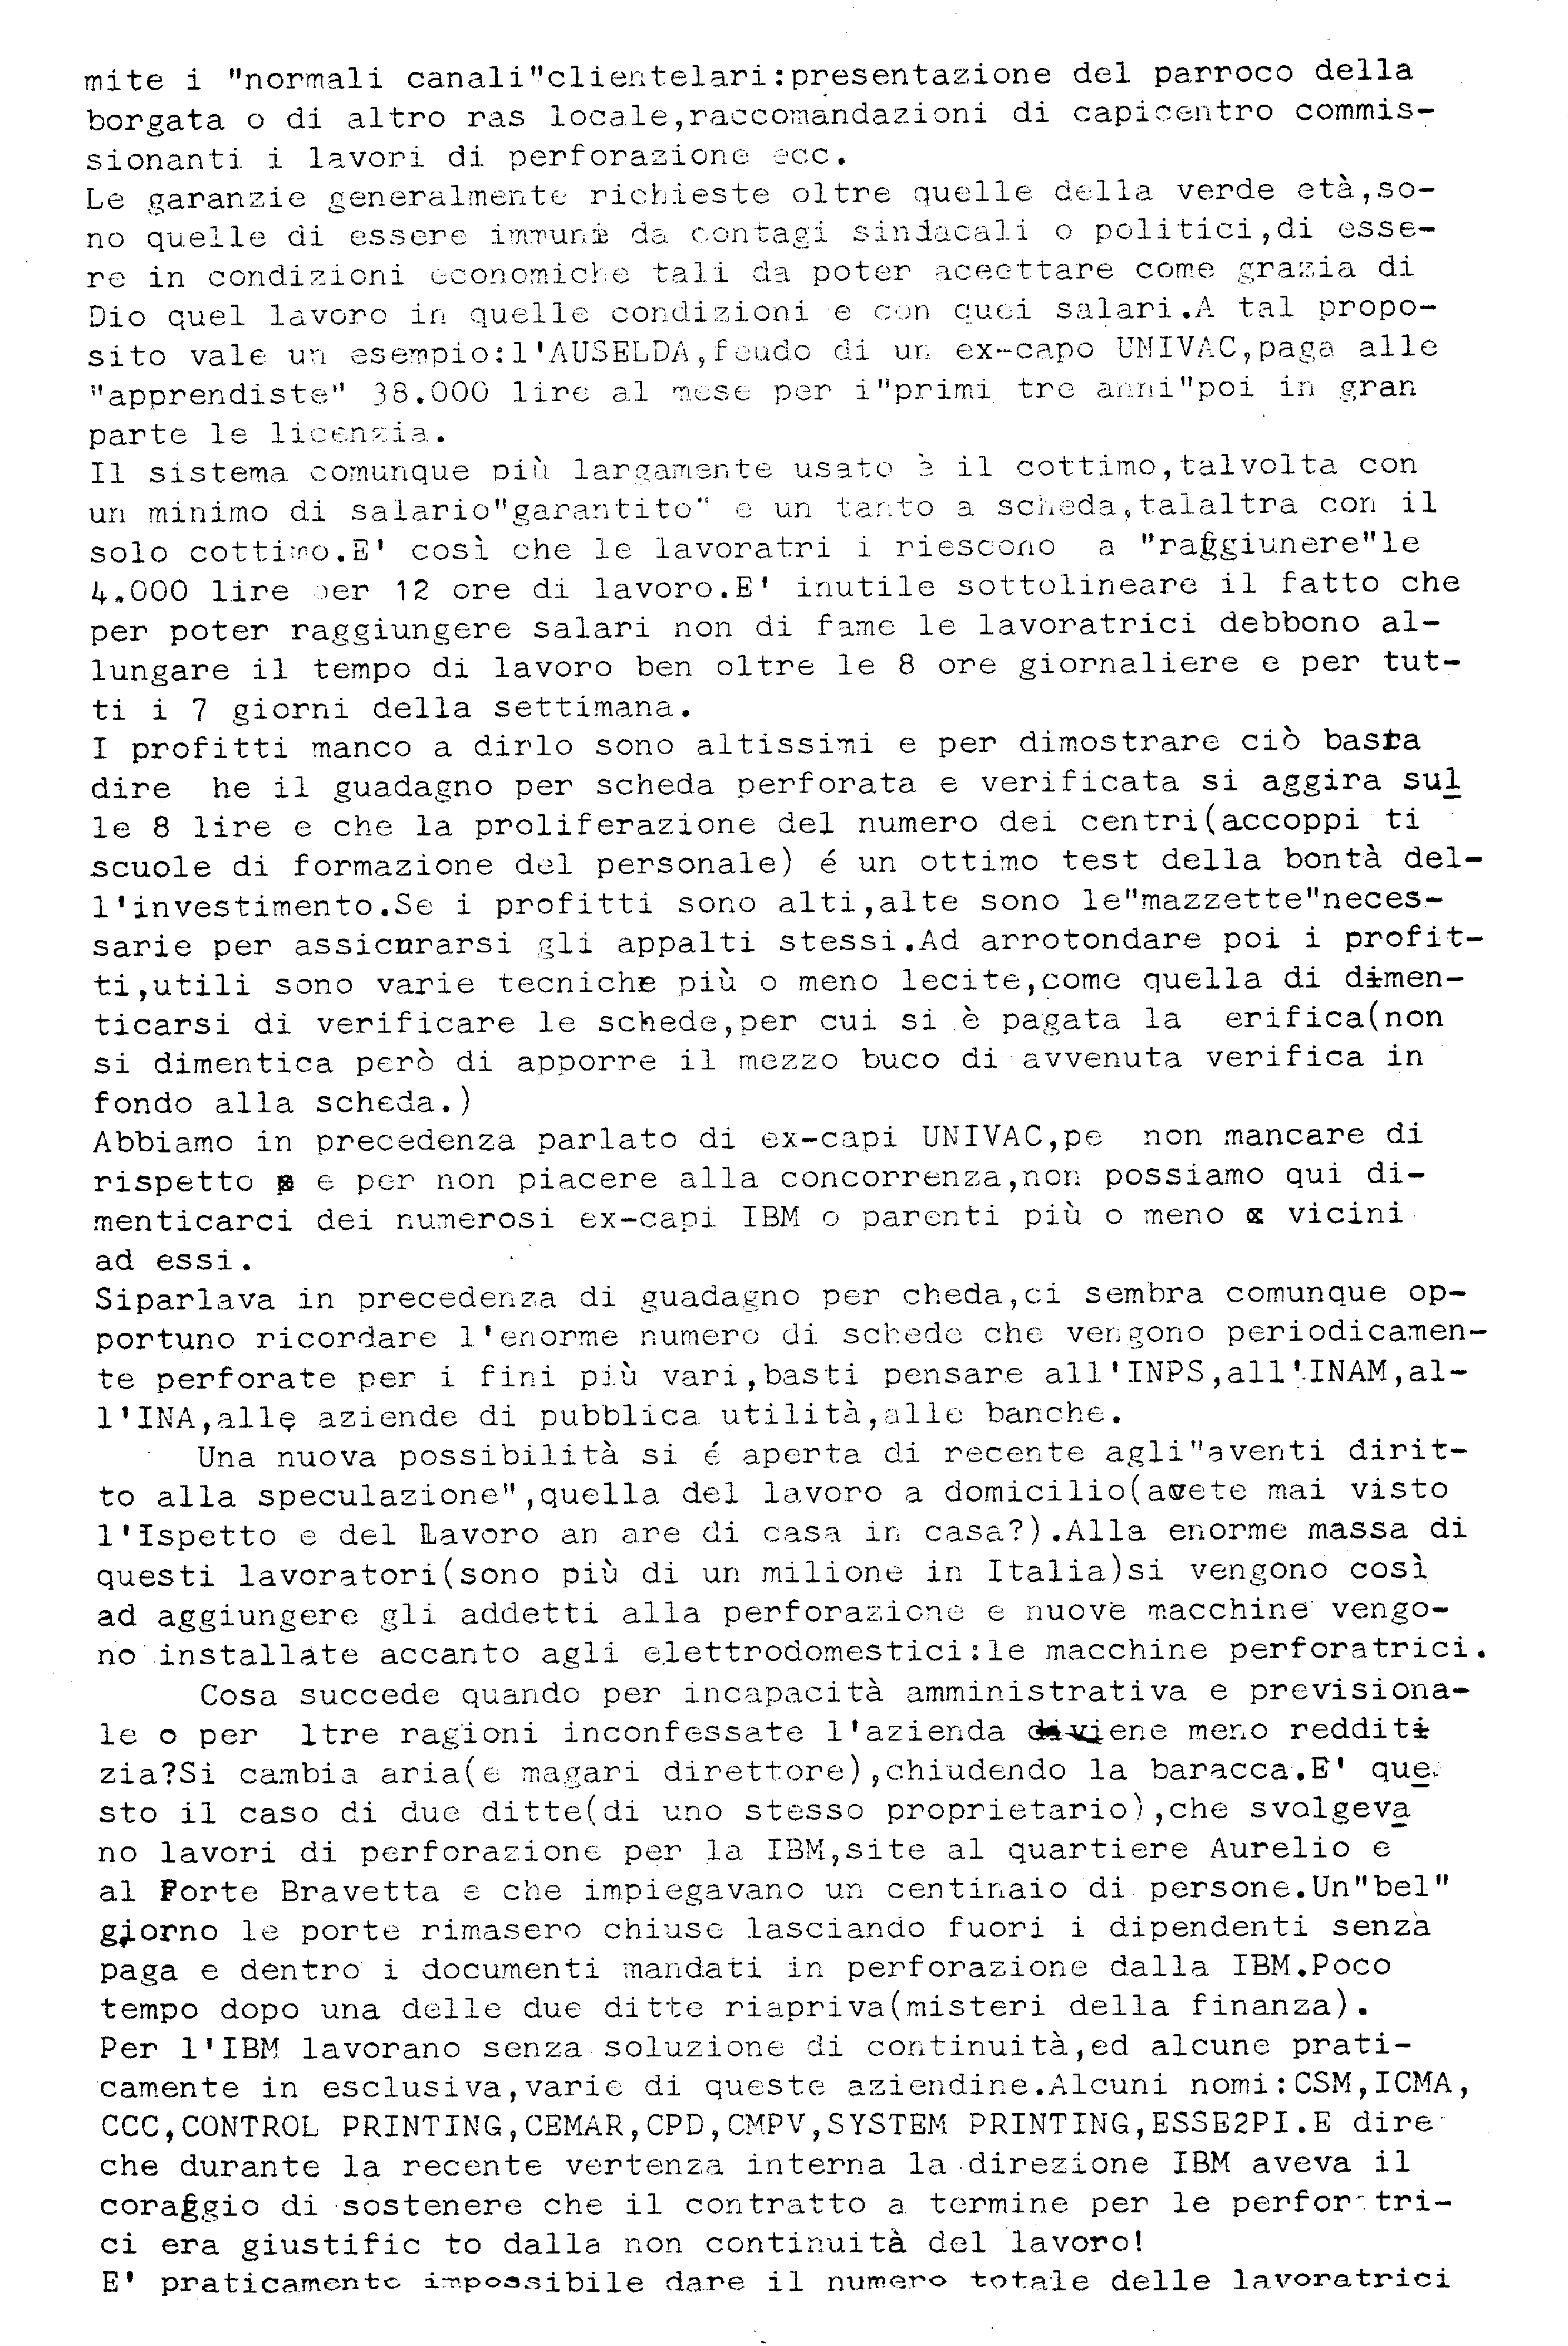 Appalti in IBM 09/03/1973